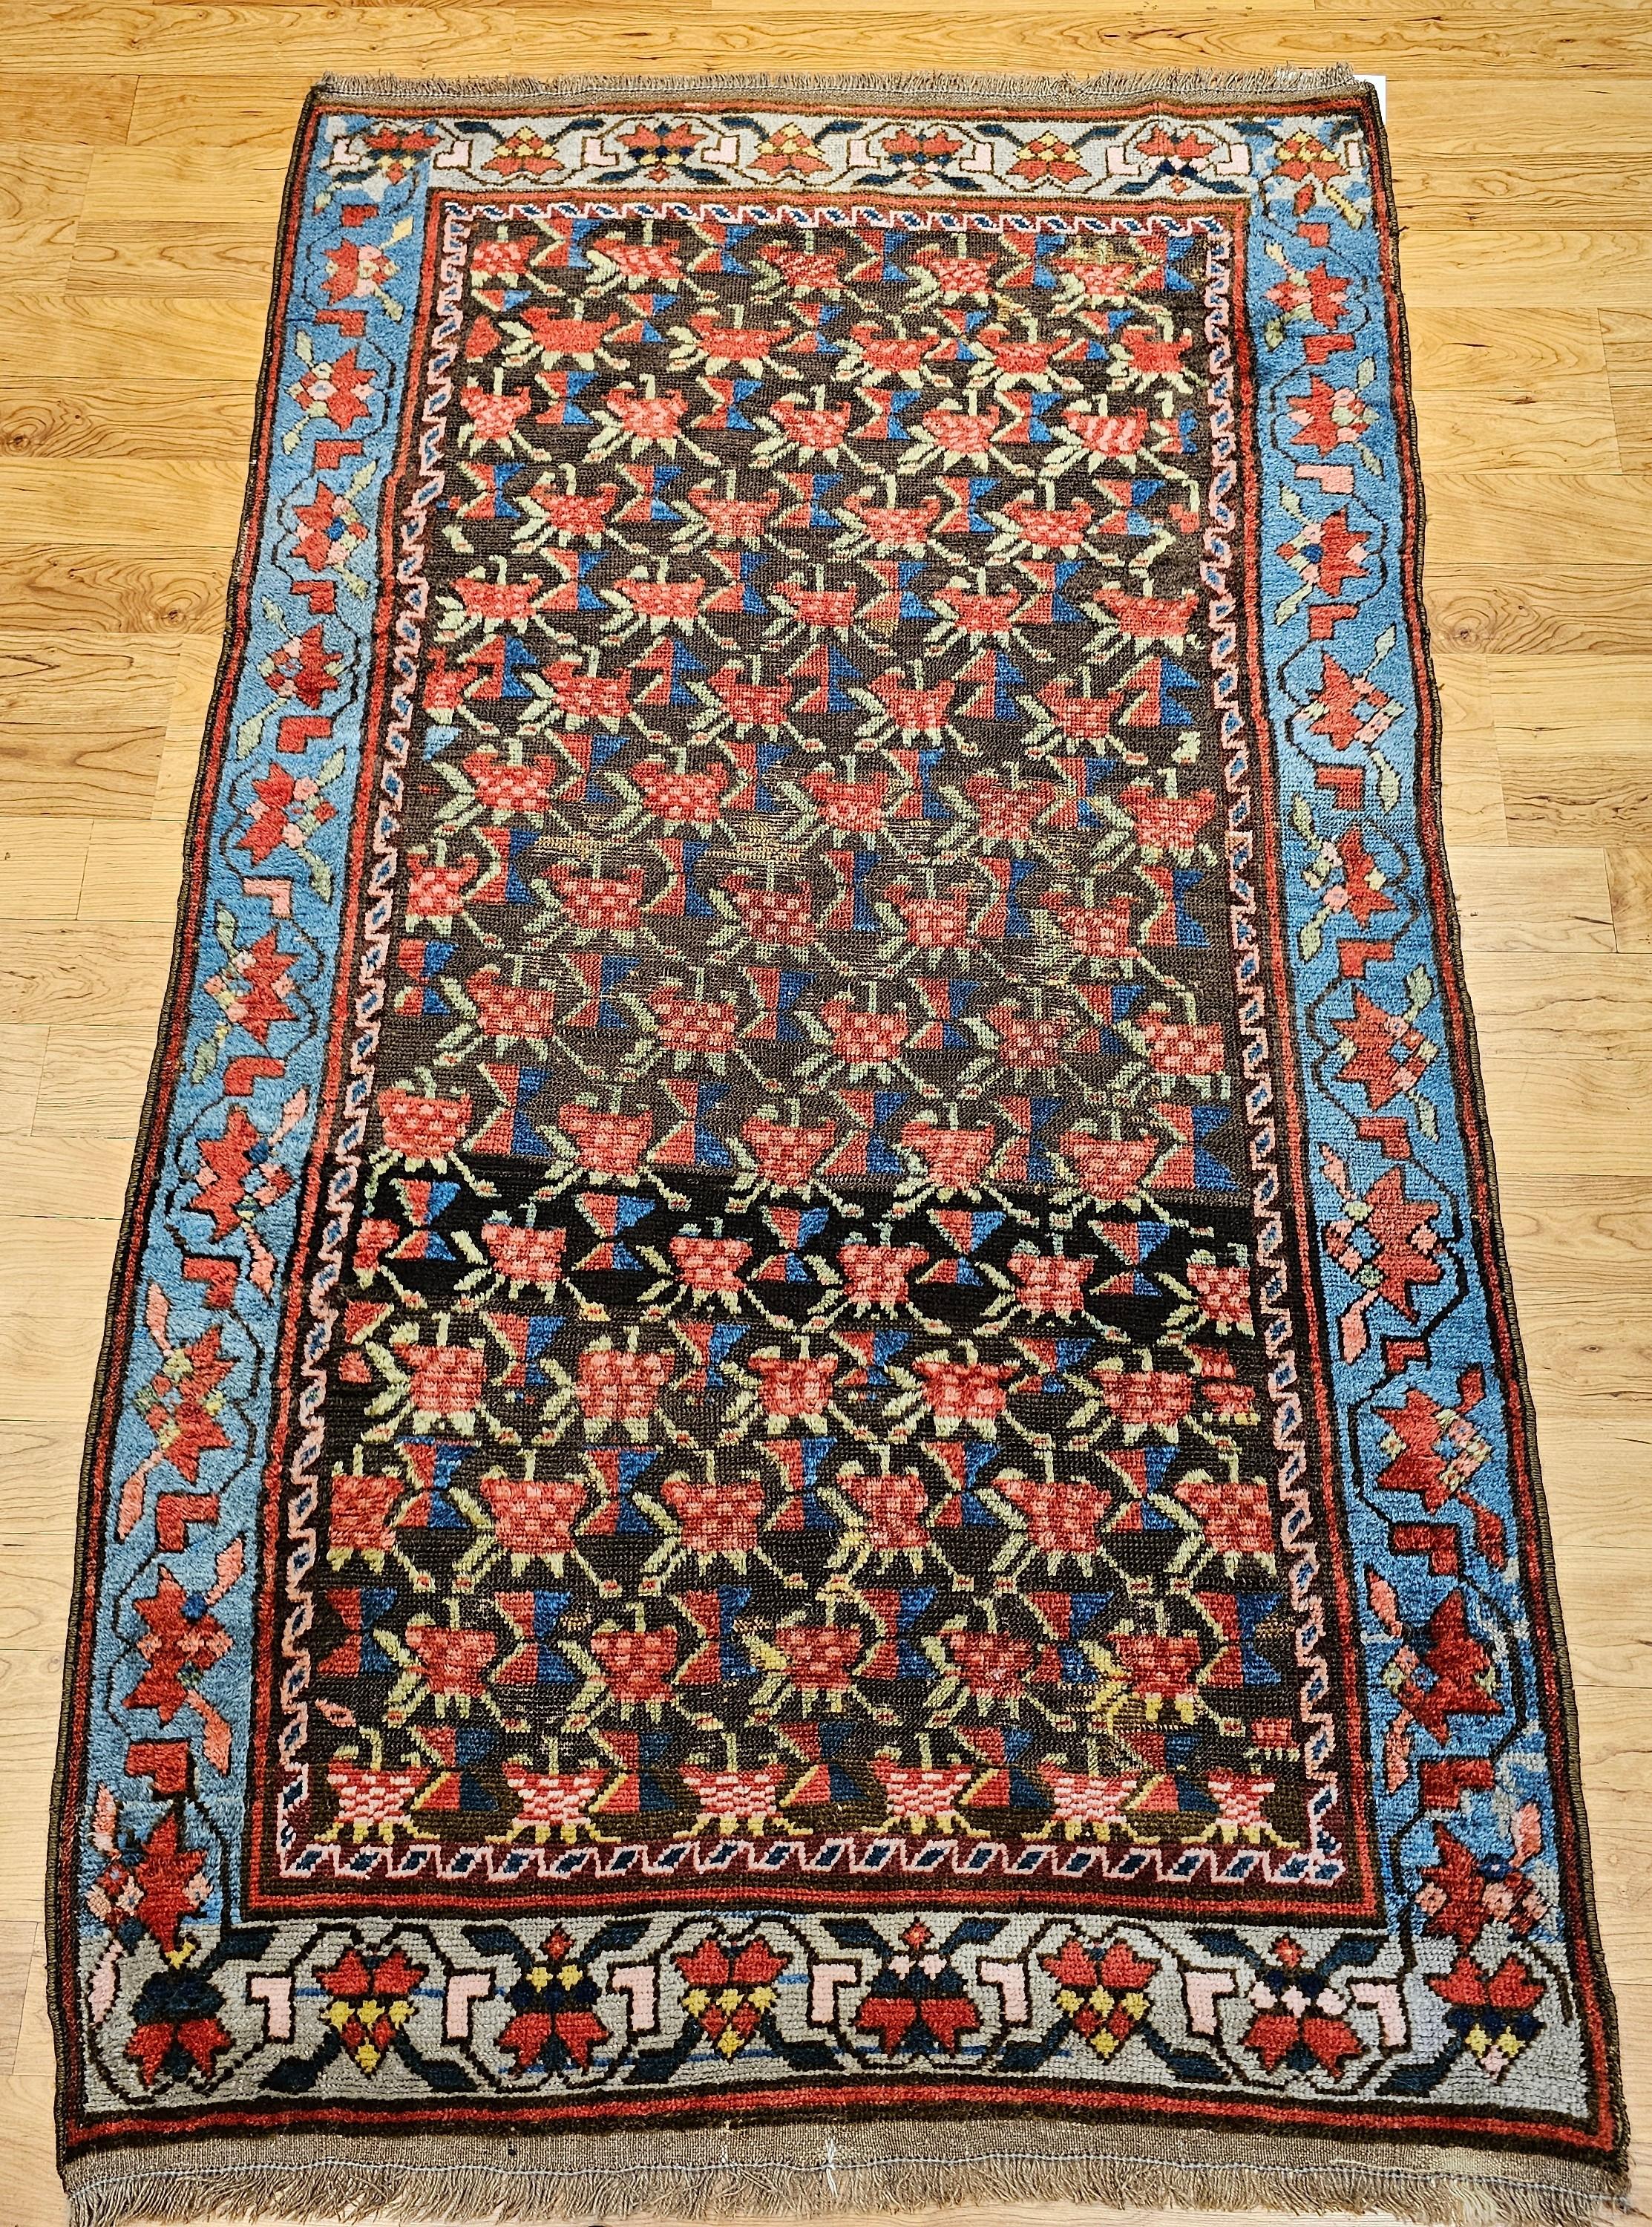 Der Vintage Karabagh Teppich von den armenischen Dorfwebern aus dem Kaukasus hat ein wunderschönes Allover-Muster in Braun, Königsblau, Rot, Grün und Gelb. Es hat eine wunderbare abraschbraune/schwarze Feldfarbe, die das Muster aus kleinen